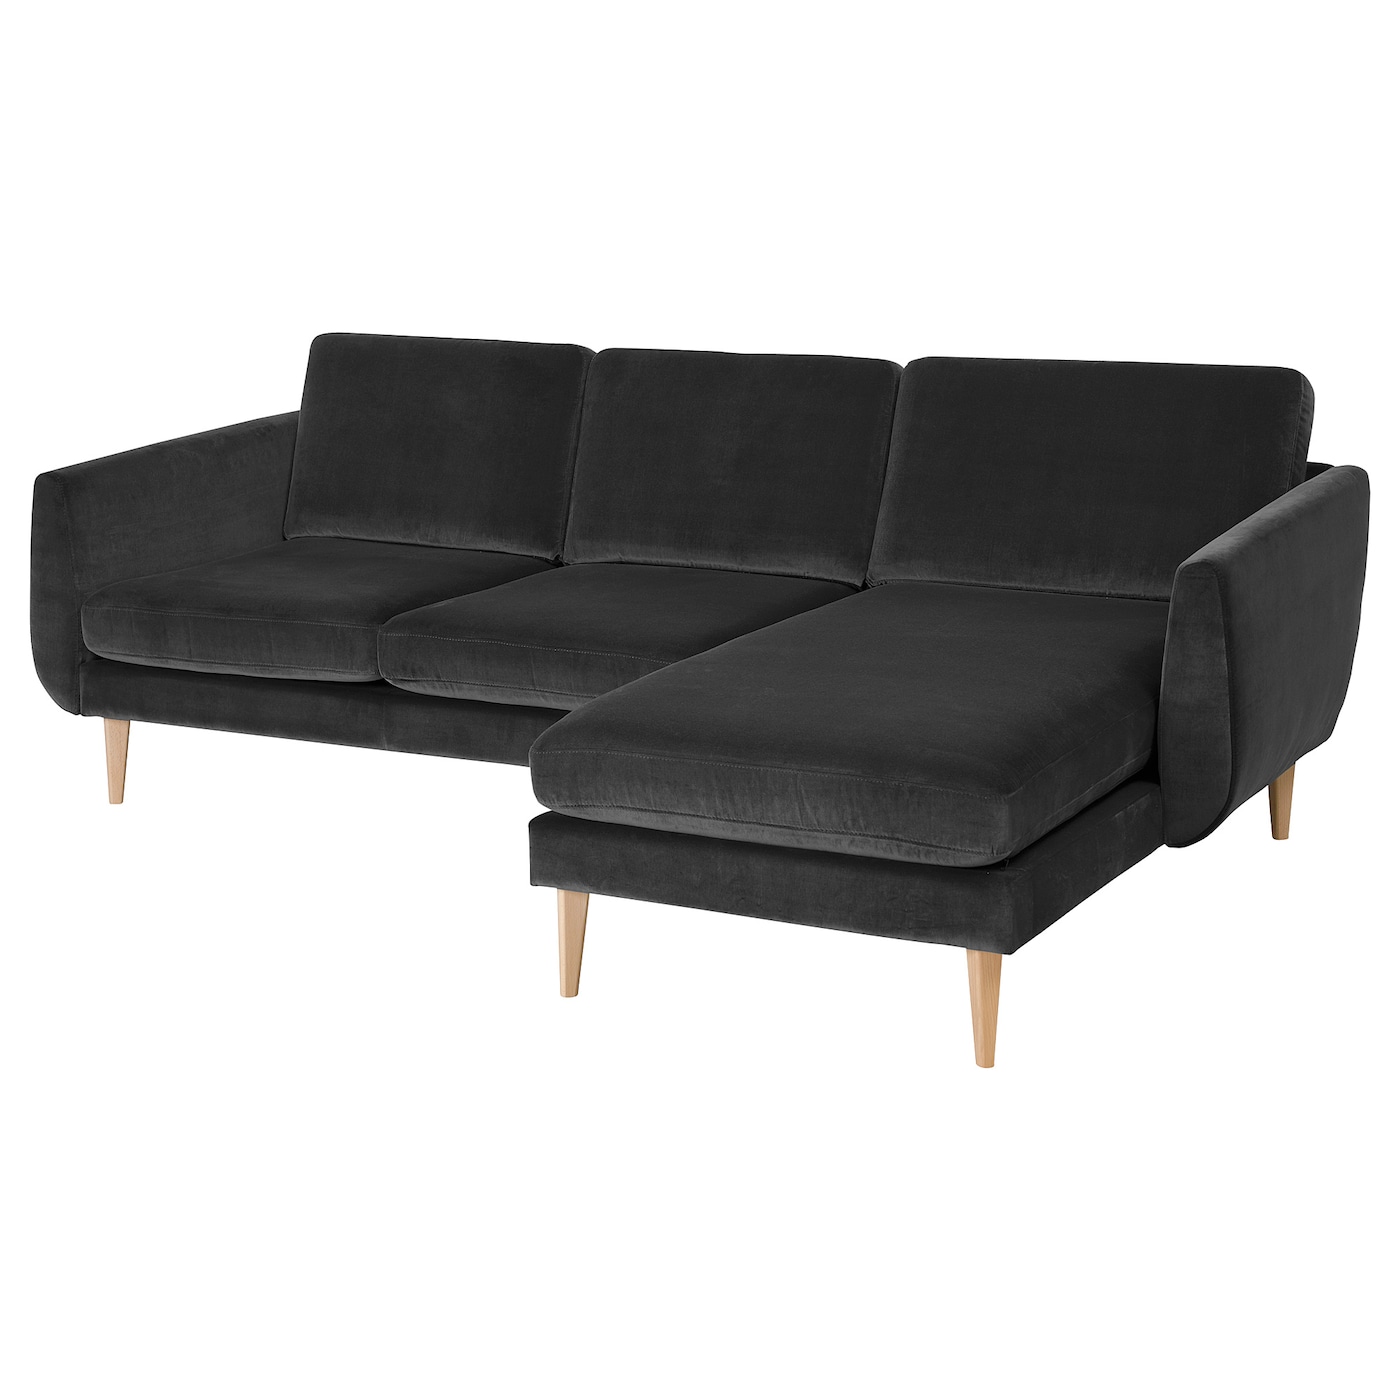 СМЕДСТОРП 3-местный диван + диван, Дюпарп/дуб темно-серый SMEDSTORP IKEA диван трансформер ладья майами серый с цветными подушками